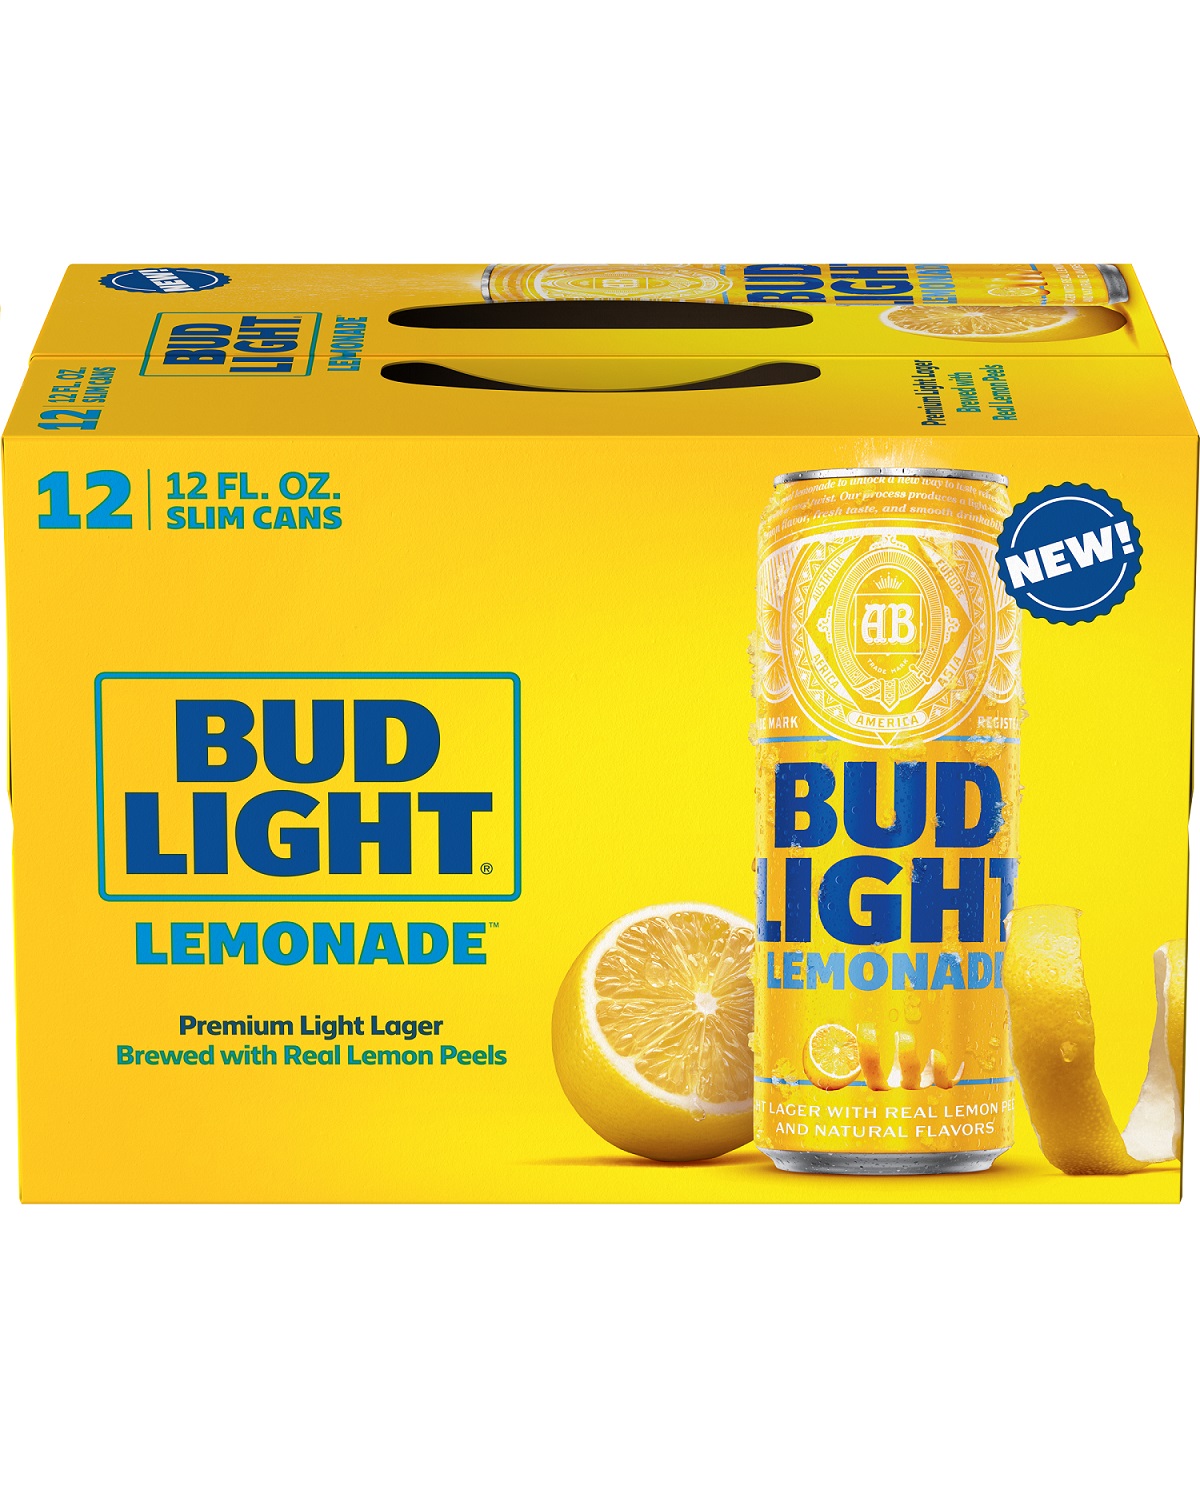 Bud Light Lemonade 12pk can